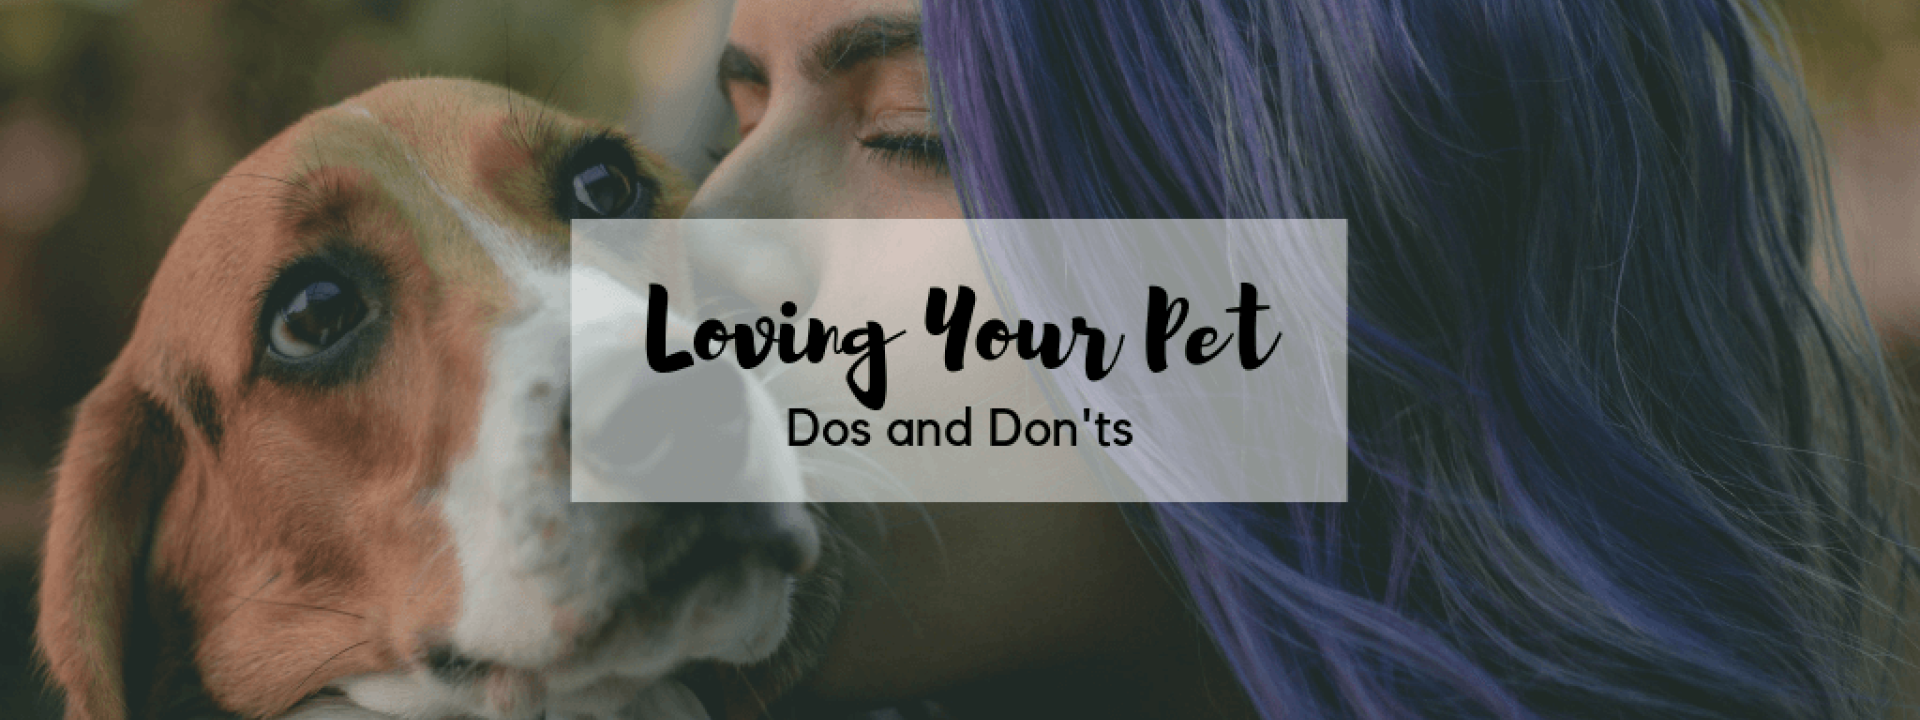 Loving-your-pet-blog-header.png